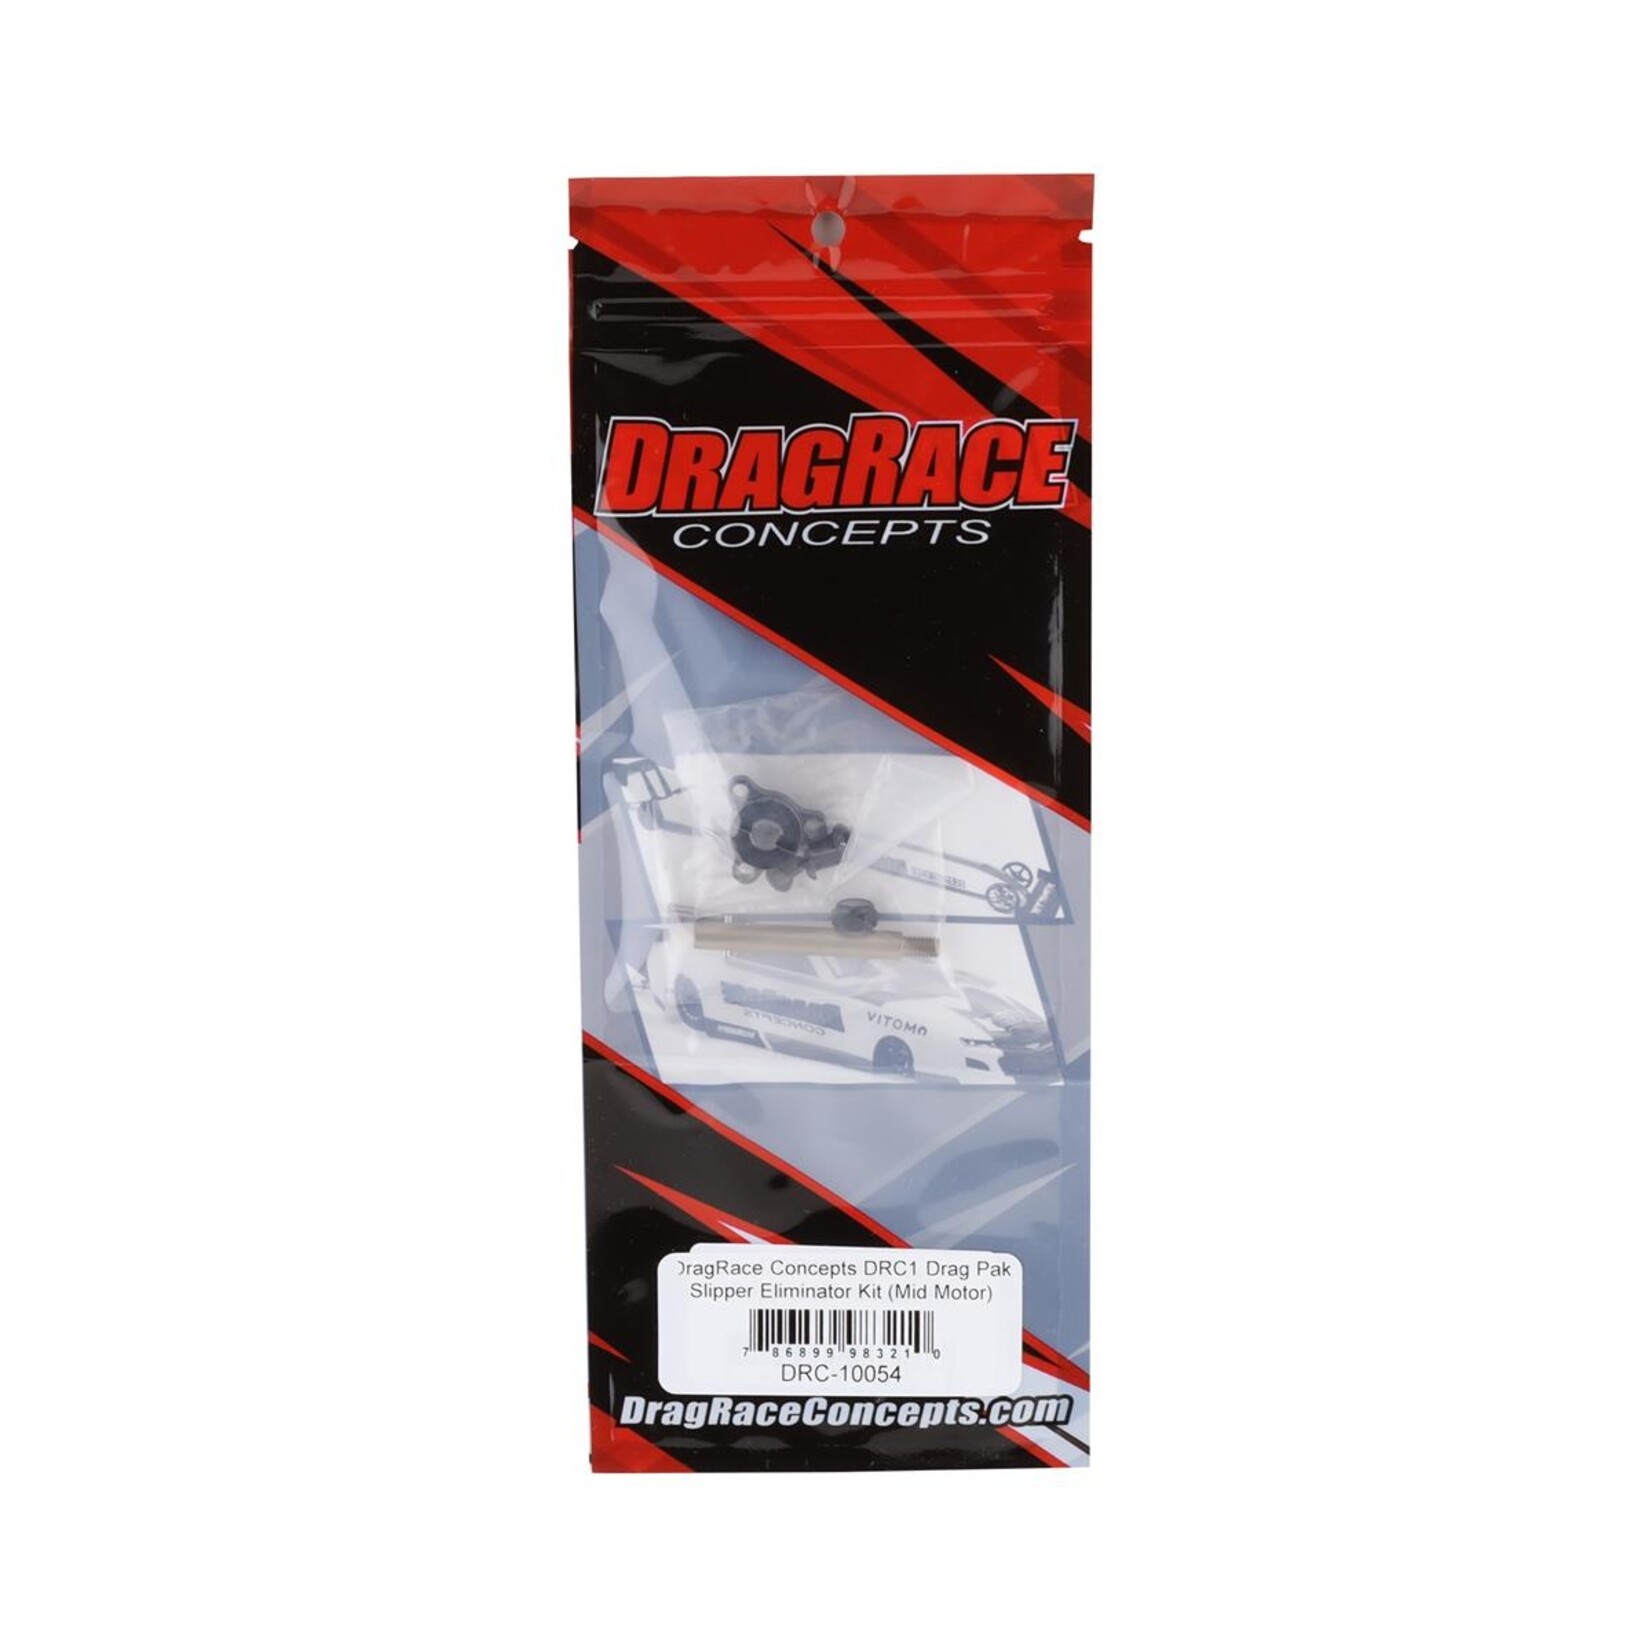 DragRace Concepts DragRace Concepts DRC1 Drag Pak Slipper Eliminator Kit (Mid Motor) #10054